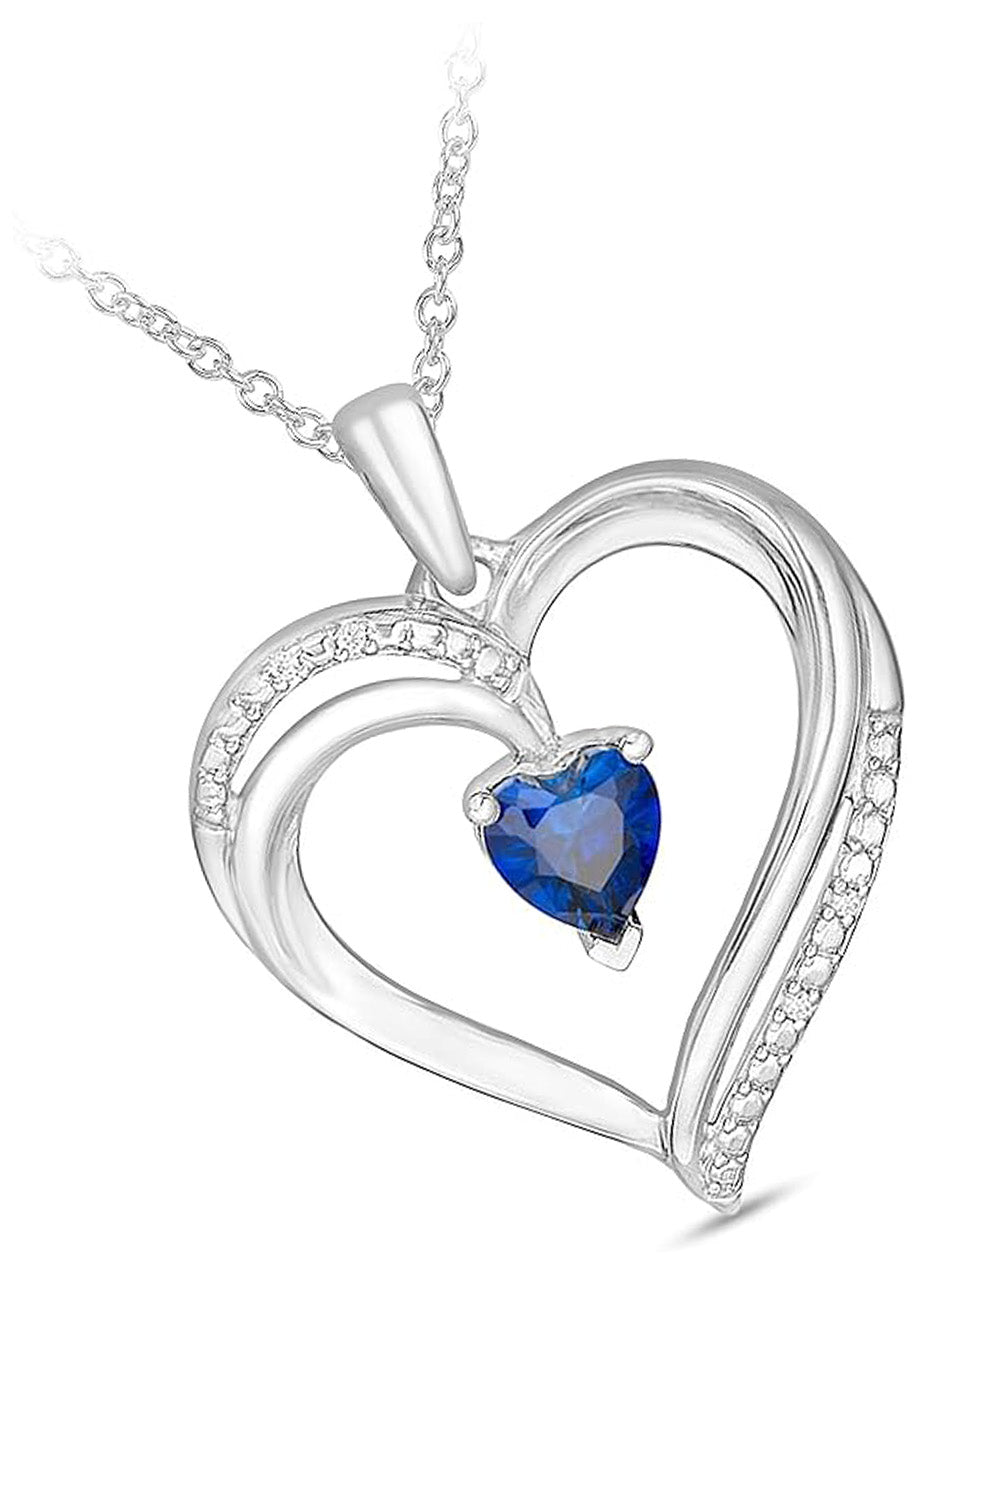 White Gold Color Blue Sapphire Heart Pendant Necklace